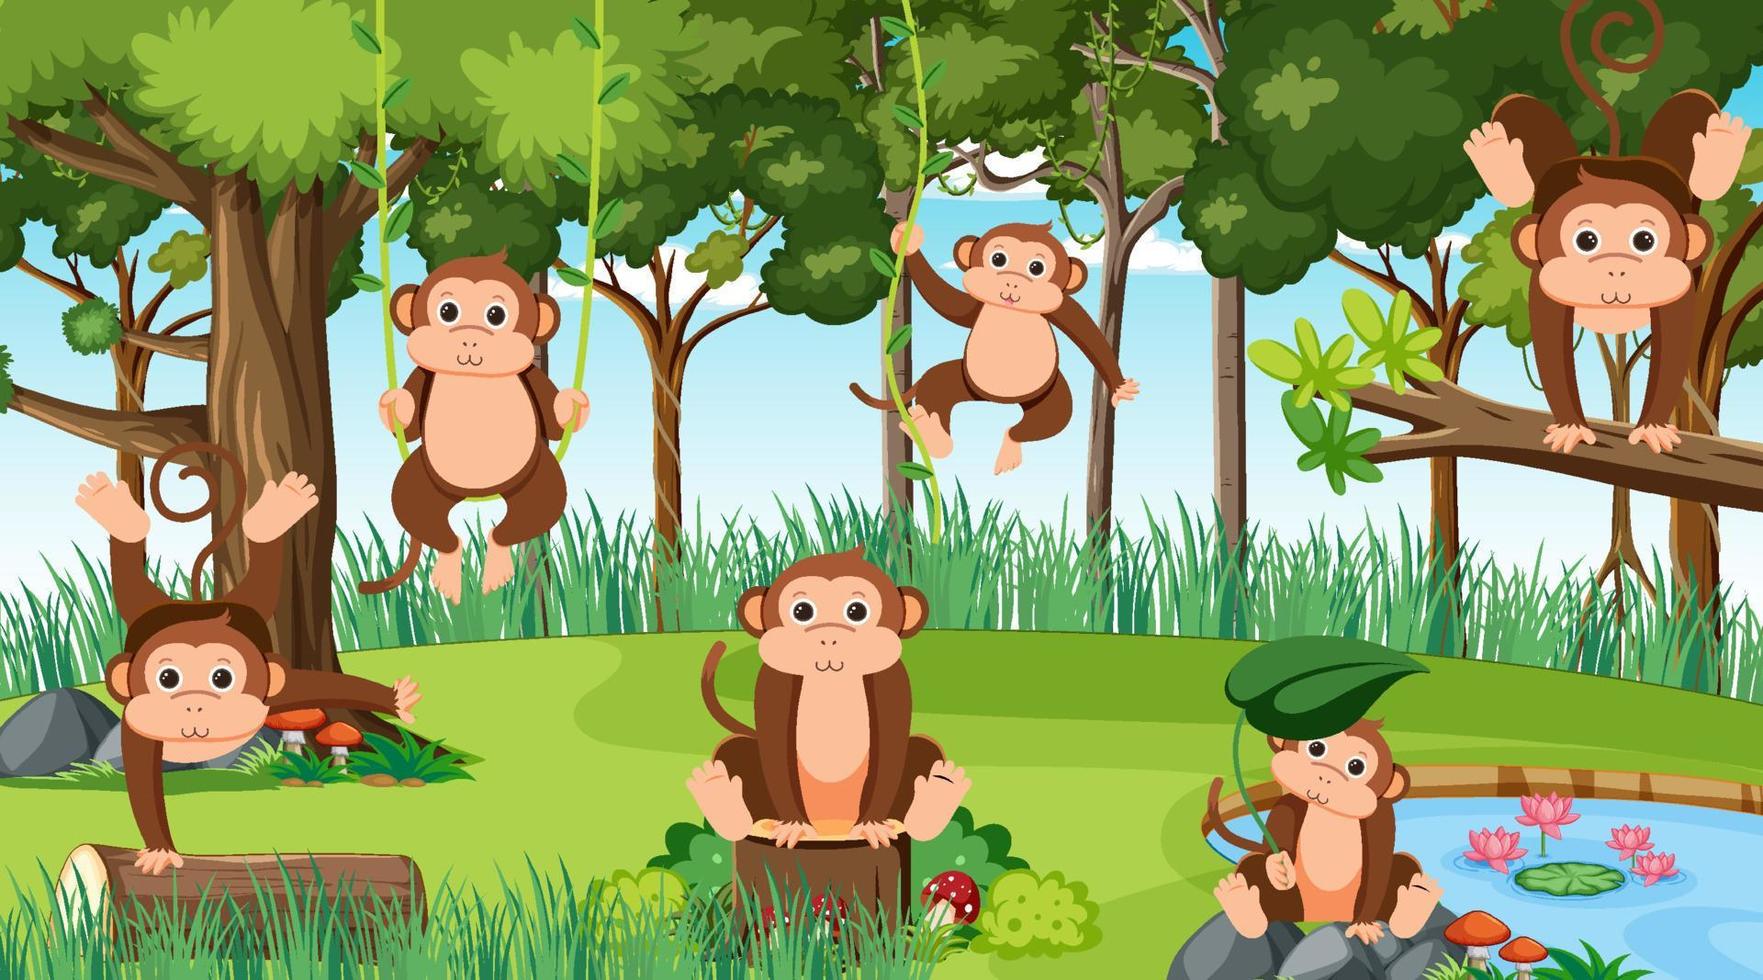 Affen in der Dschungelszene vektor